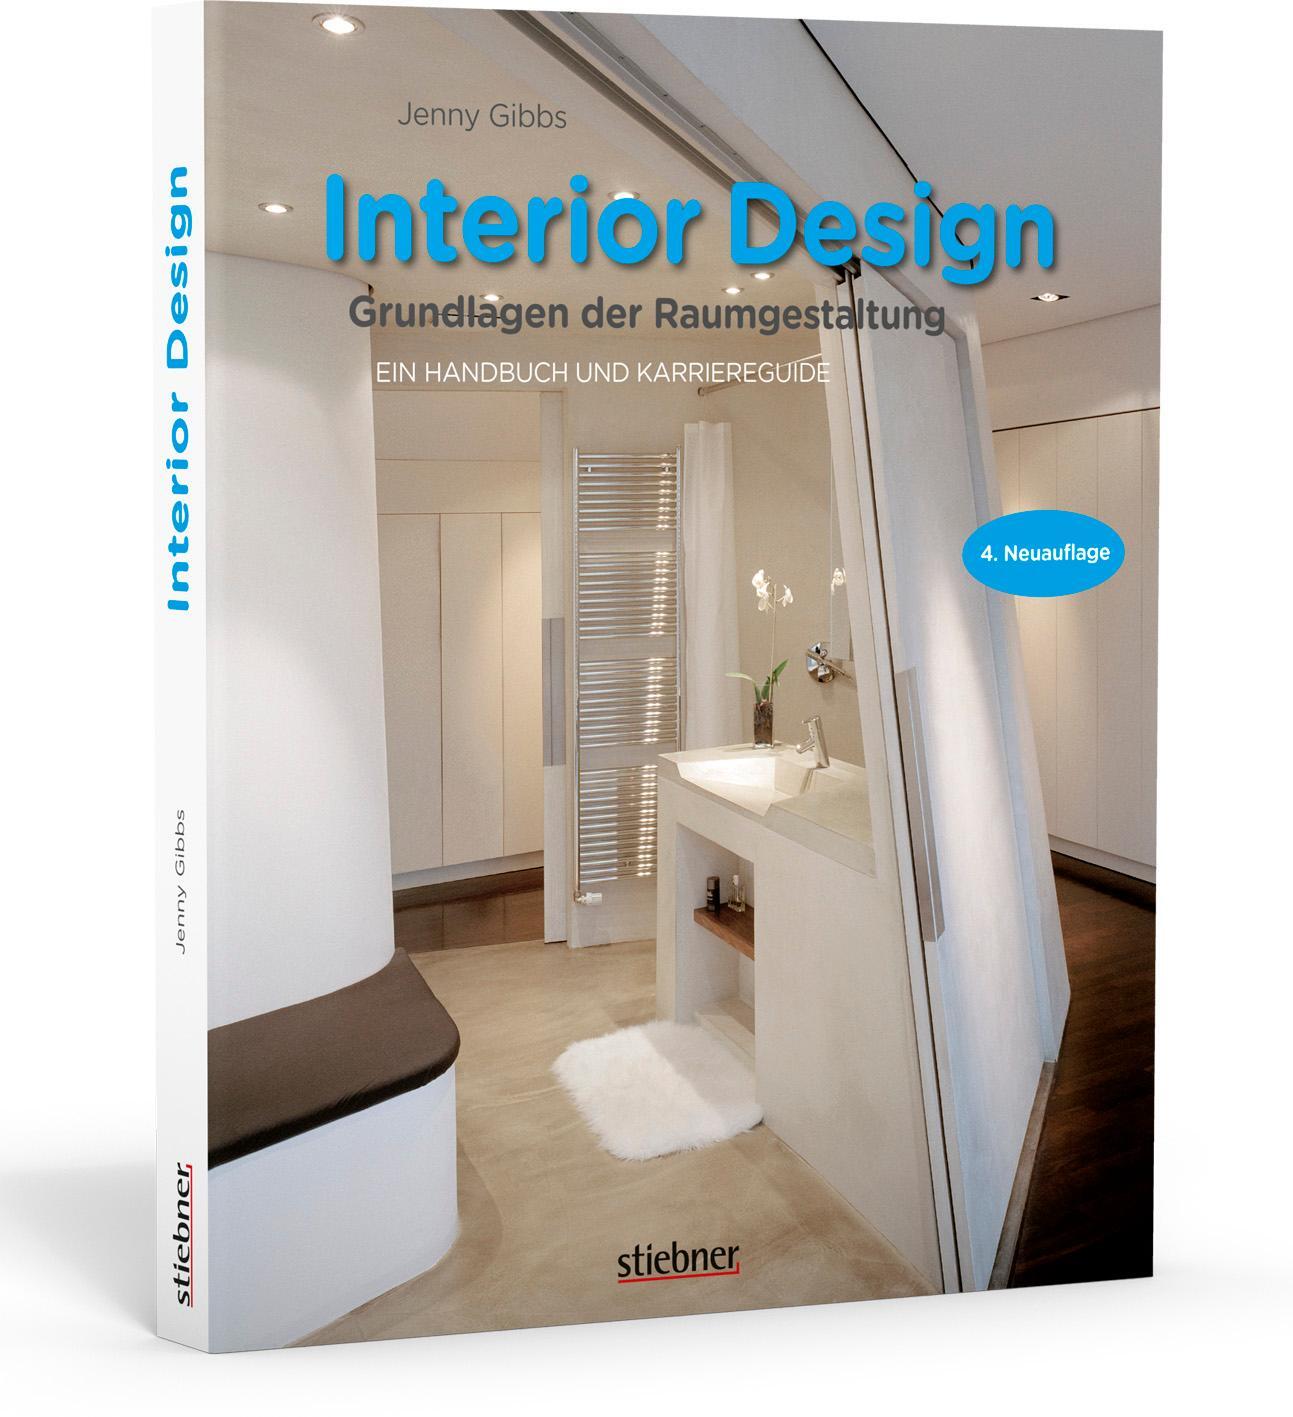 Interior design - Grundlagen der Raumgestaltung - Gibbs, Jenny